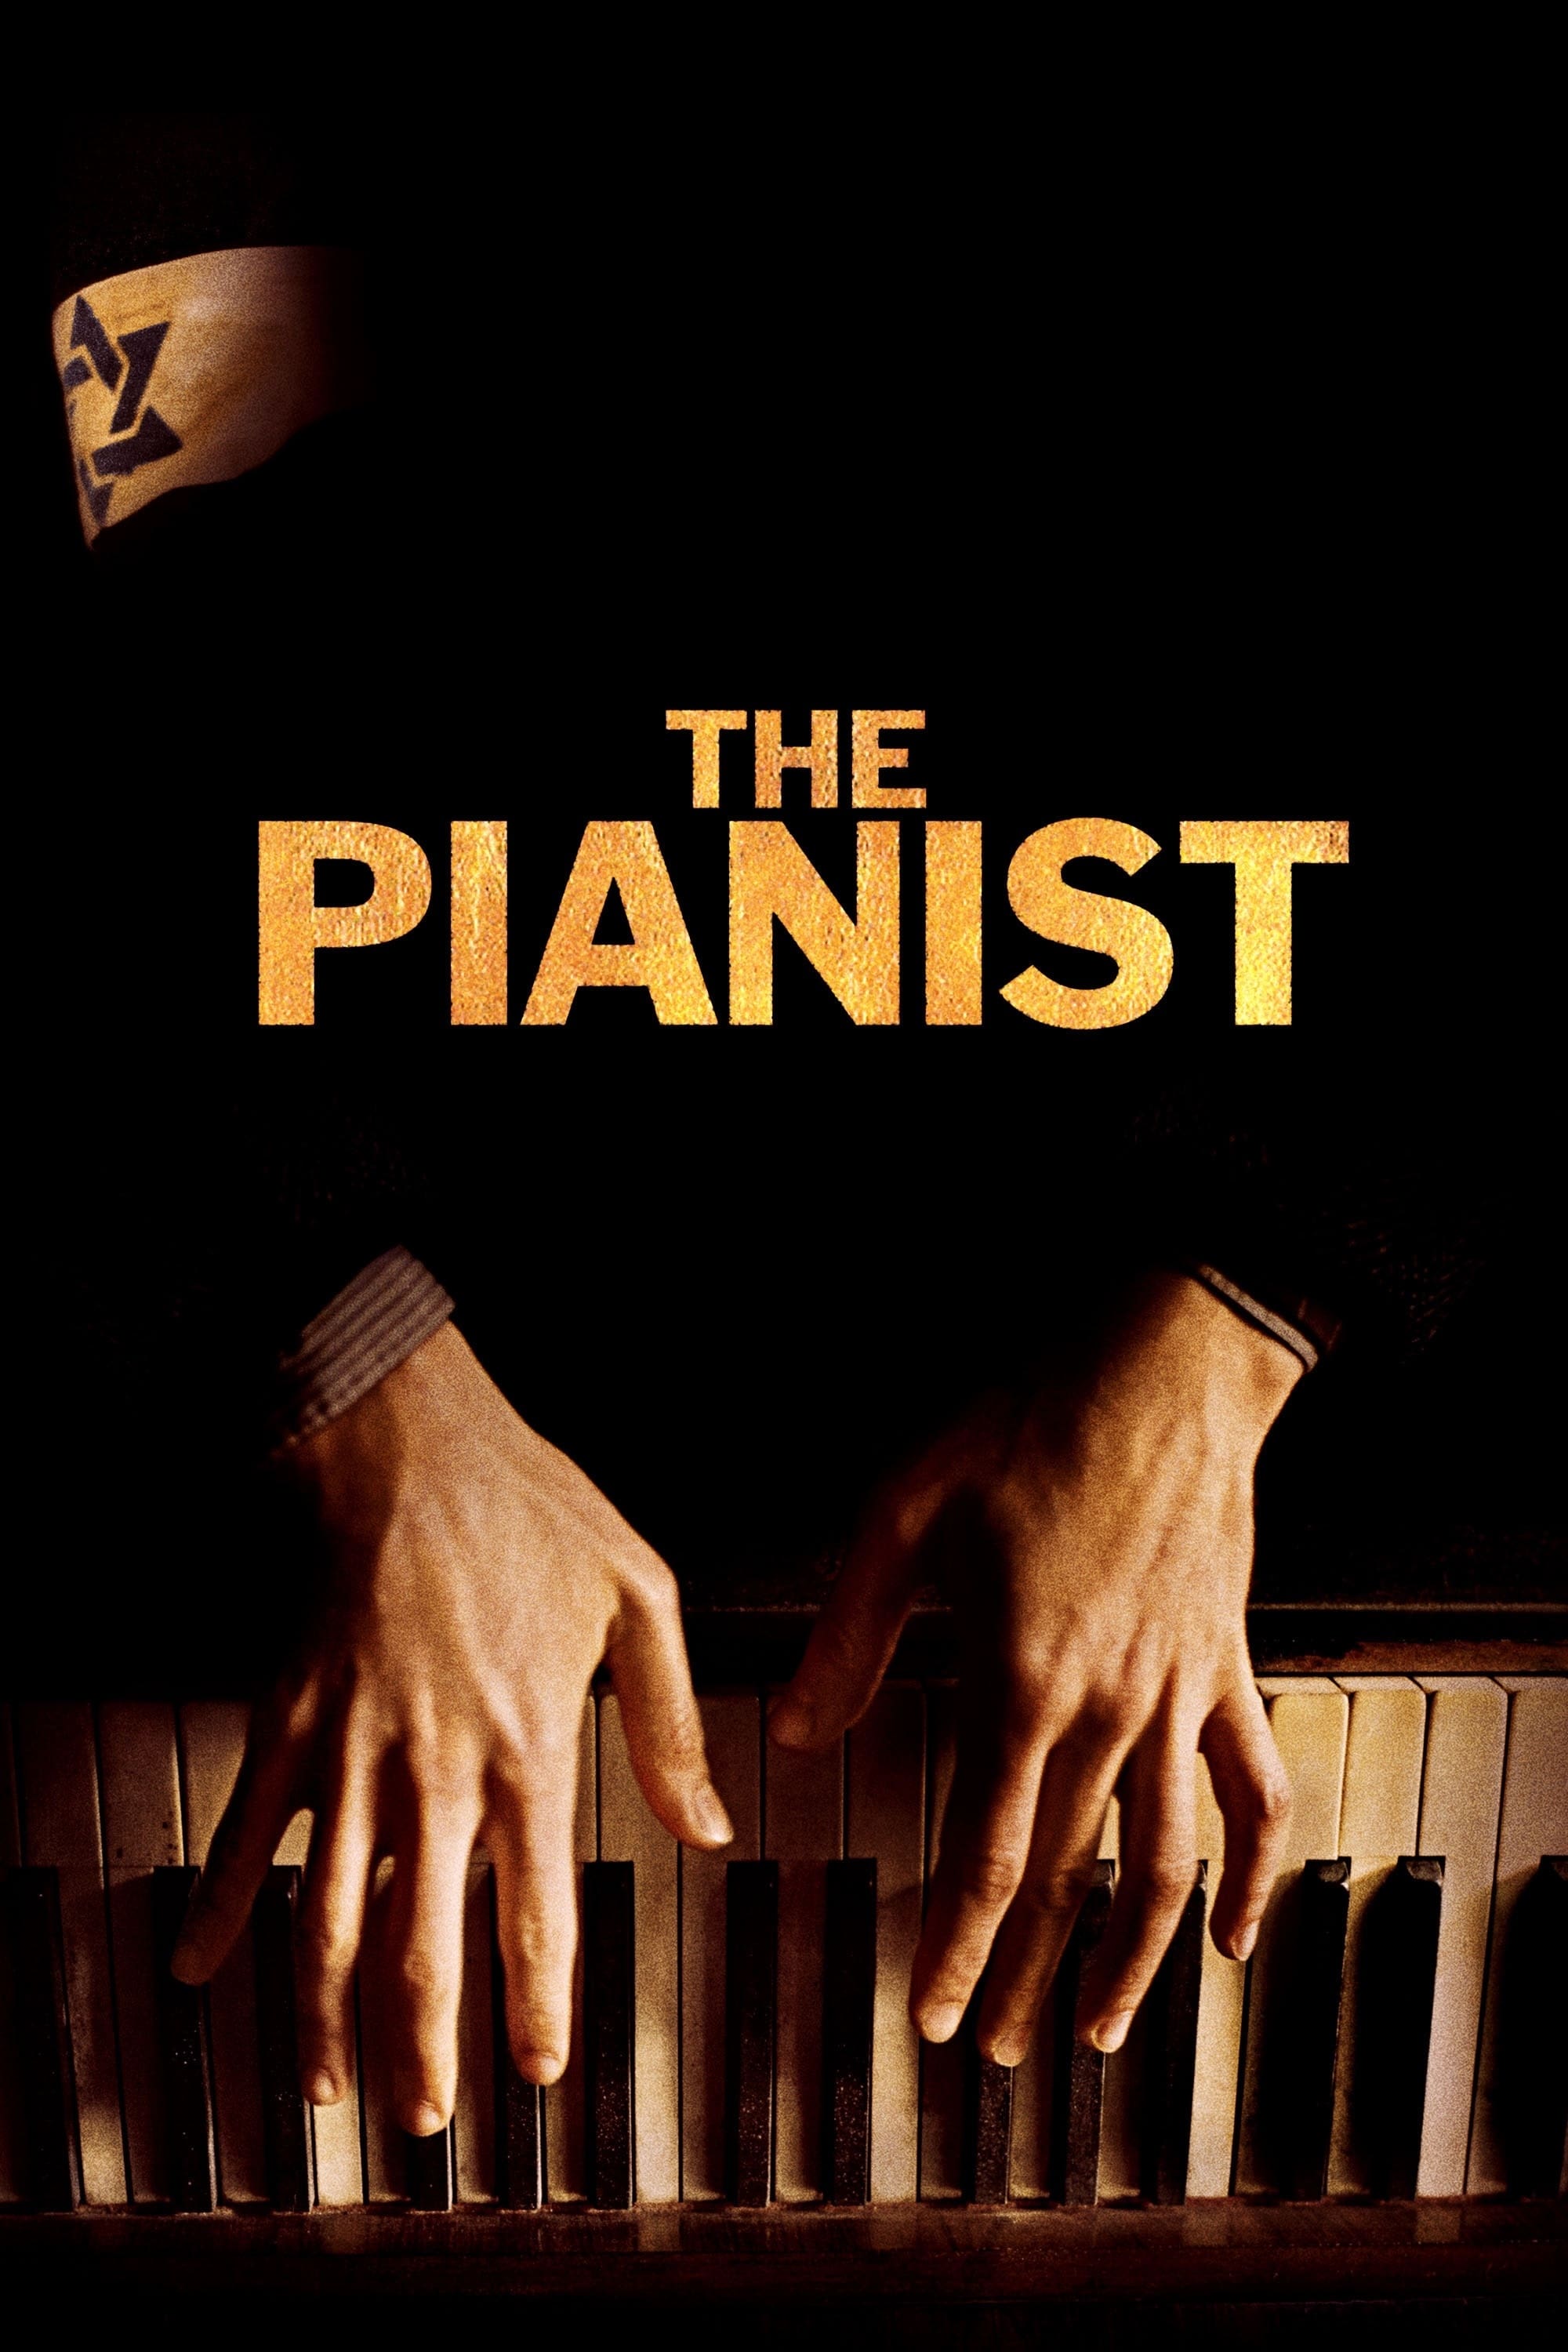 Le Pianiste (2002)